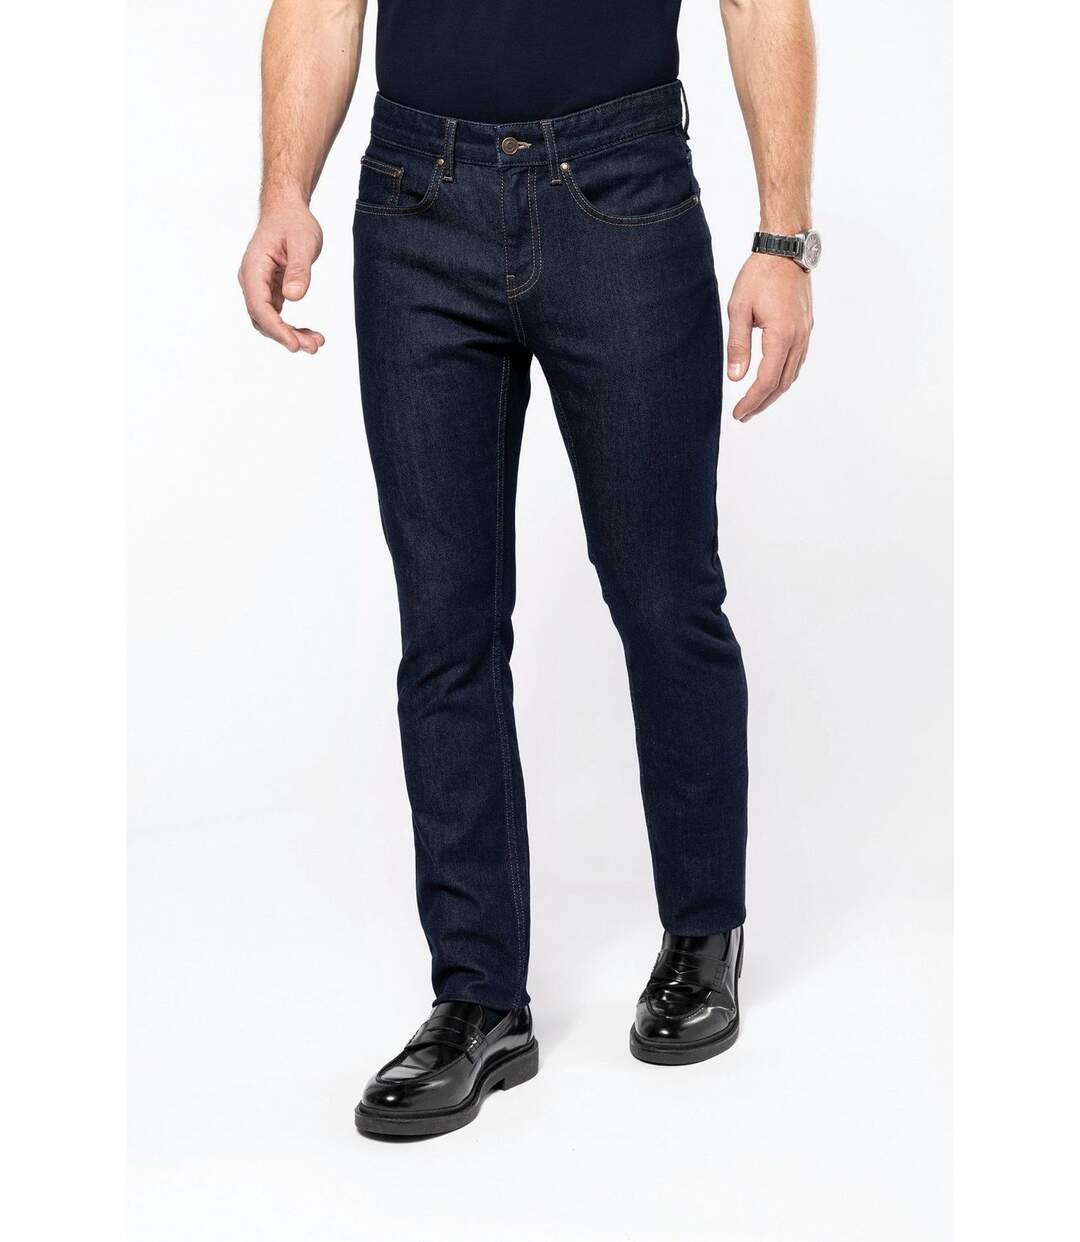 Pantalon jean Premium pour homme - PK730 - bleu denim